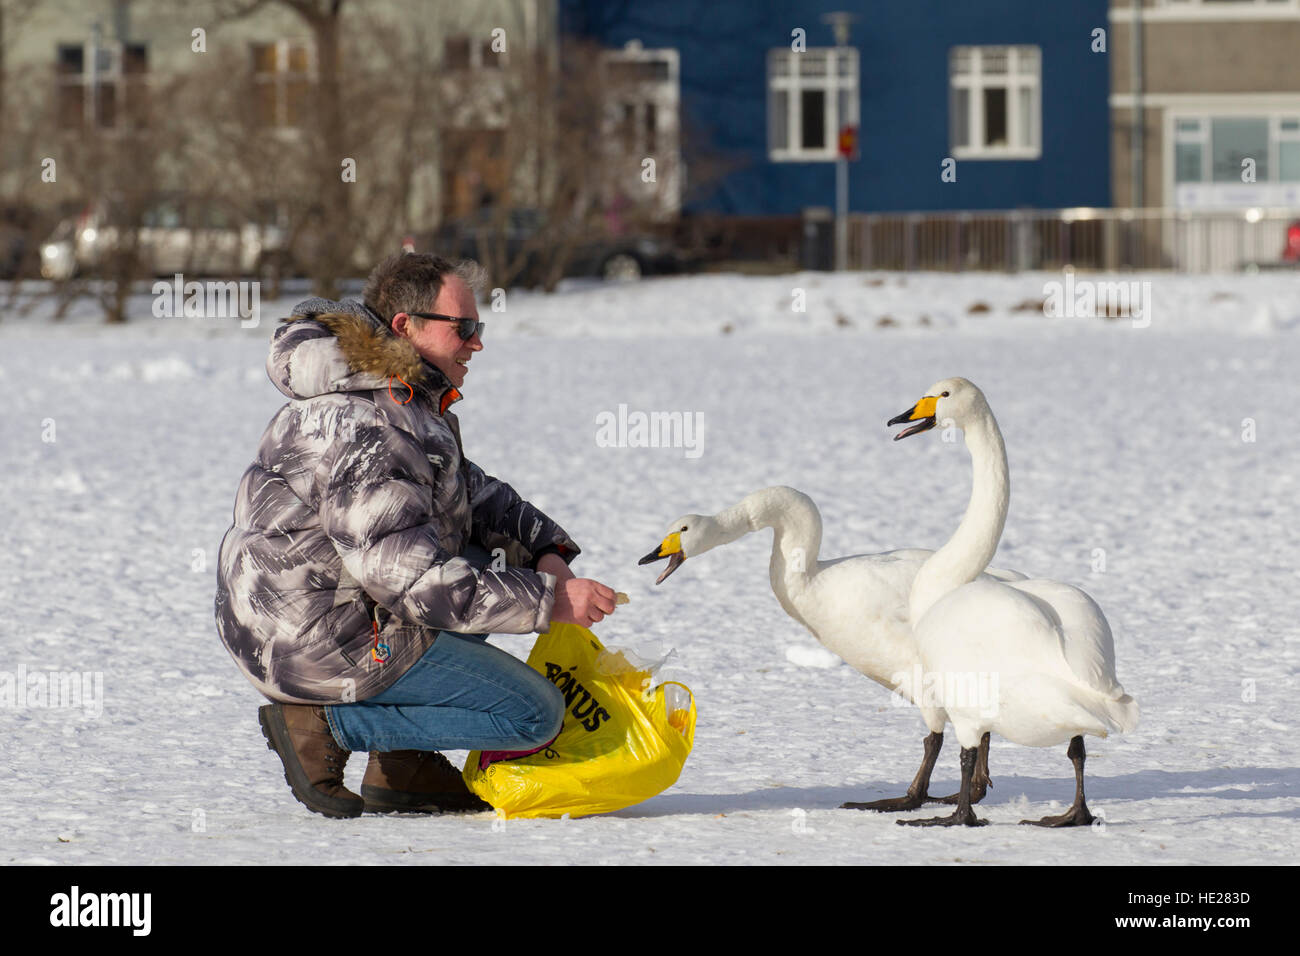 El hombre alimenta cisnes cantores (Cygnus cygnus) con la mano sobre el lago congelado en el parque de la ciudad en invierno Foto de stock